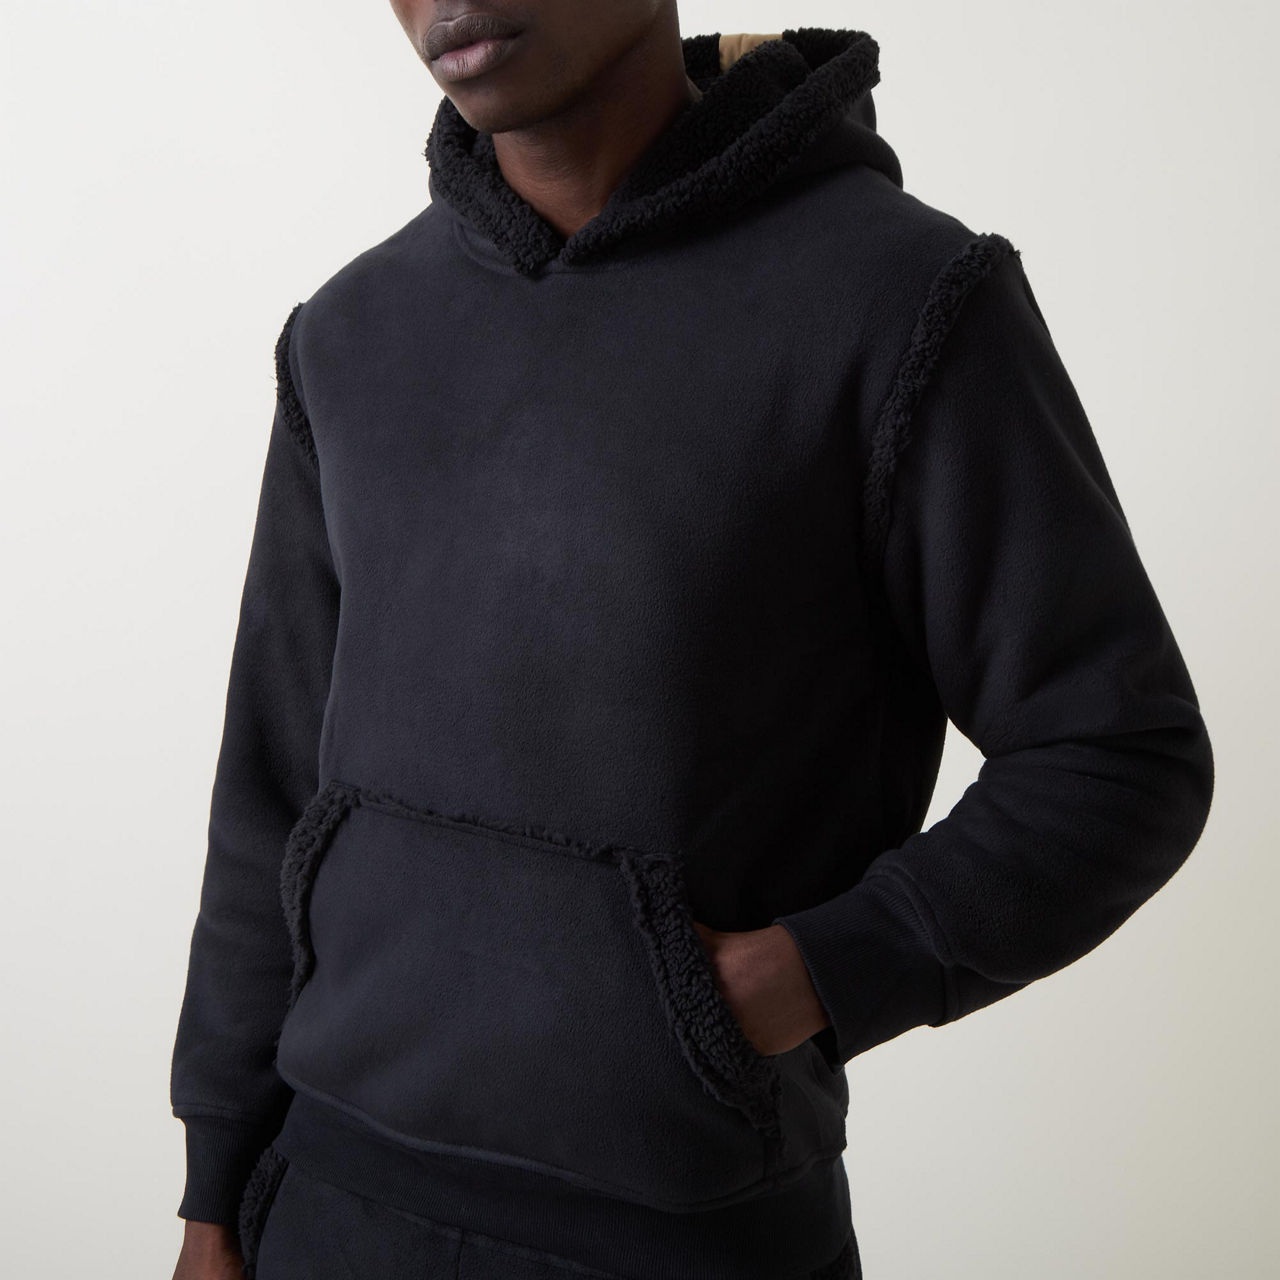 UGG Evren Bonded Fleece Zip Up Sweater for Men